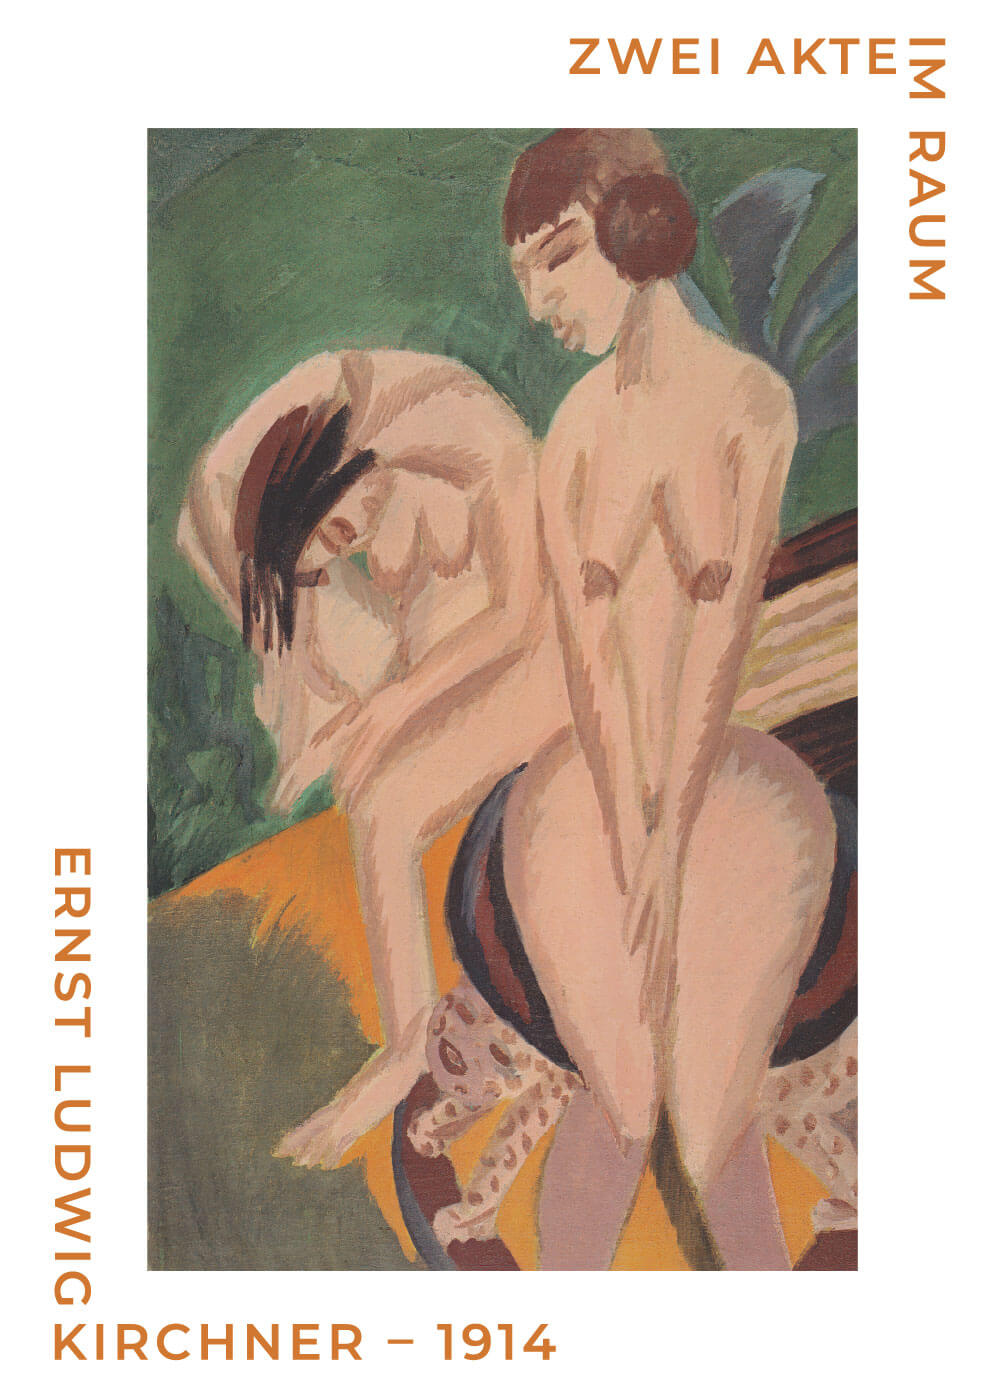 Billede af Zwei akteim raum - Ernst L. Kirchner museumsplakat